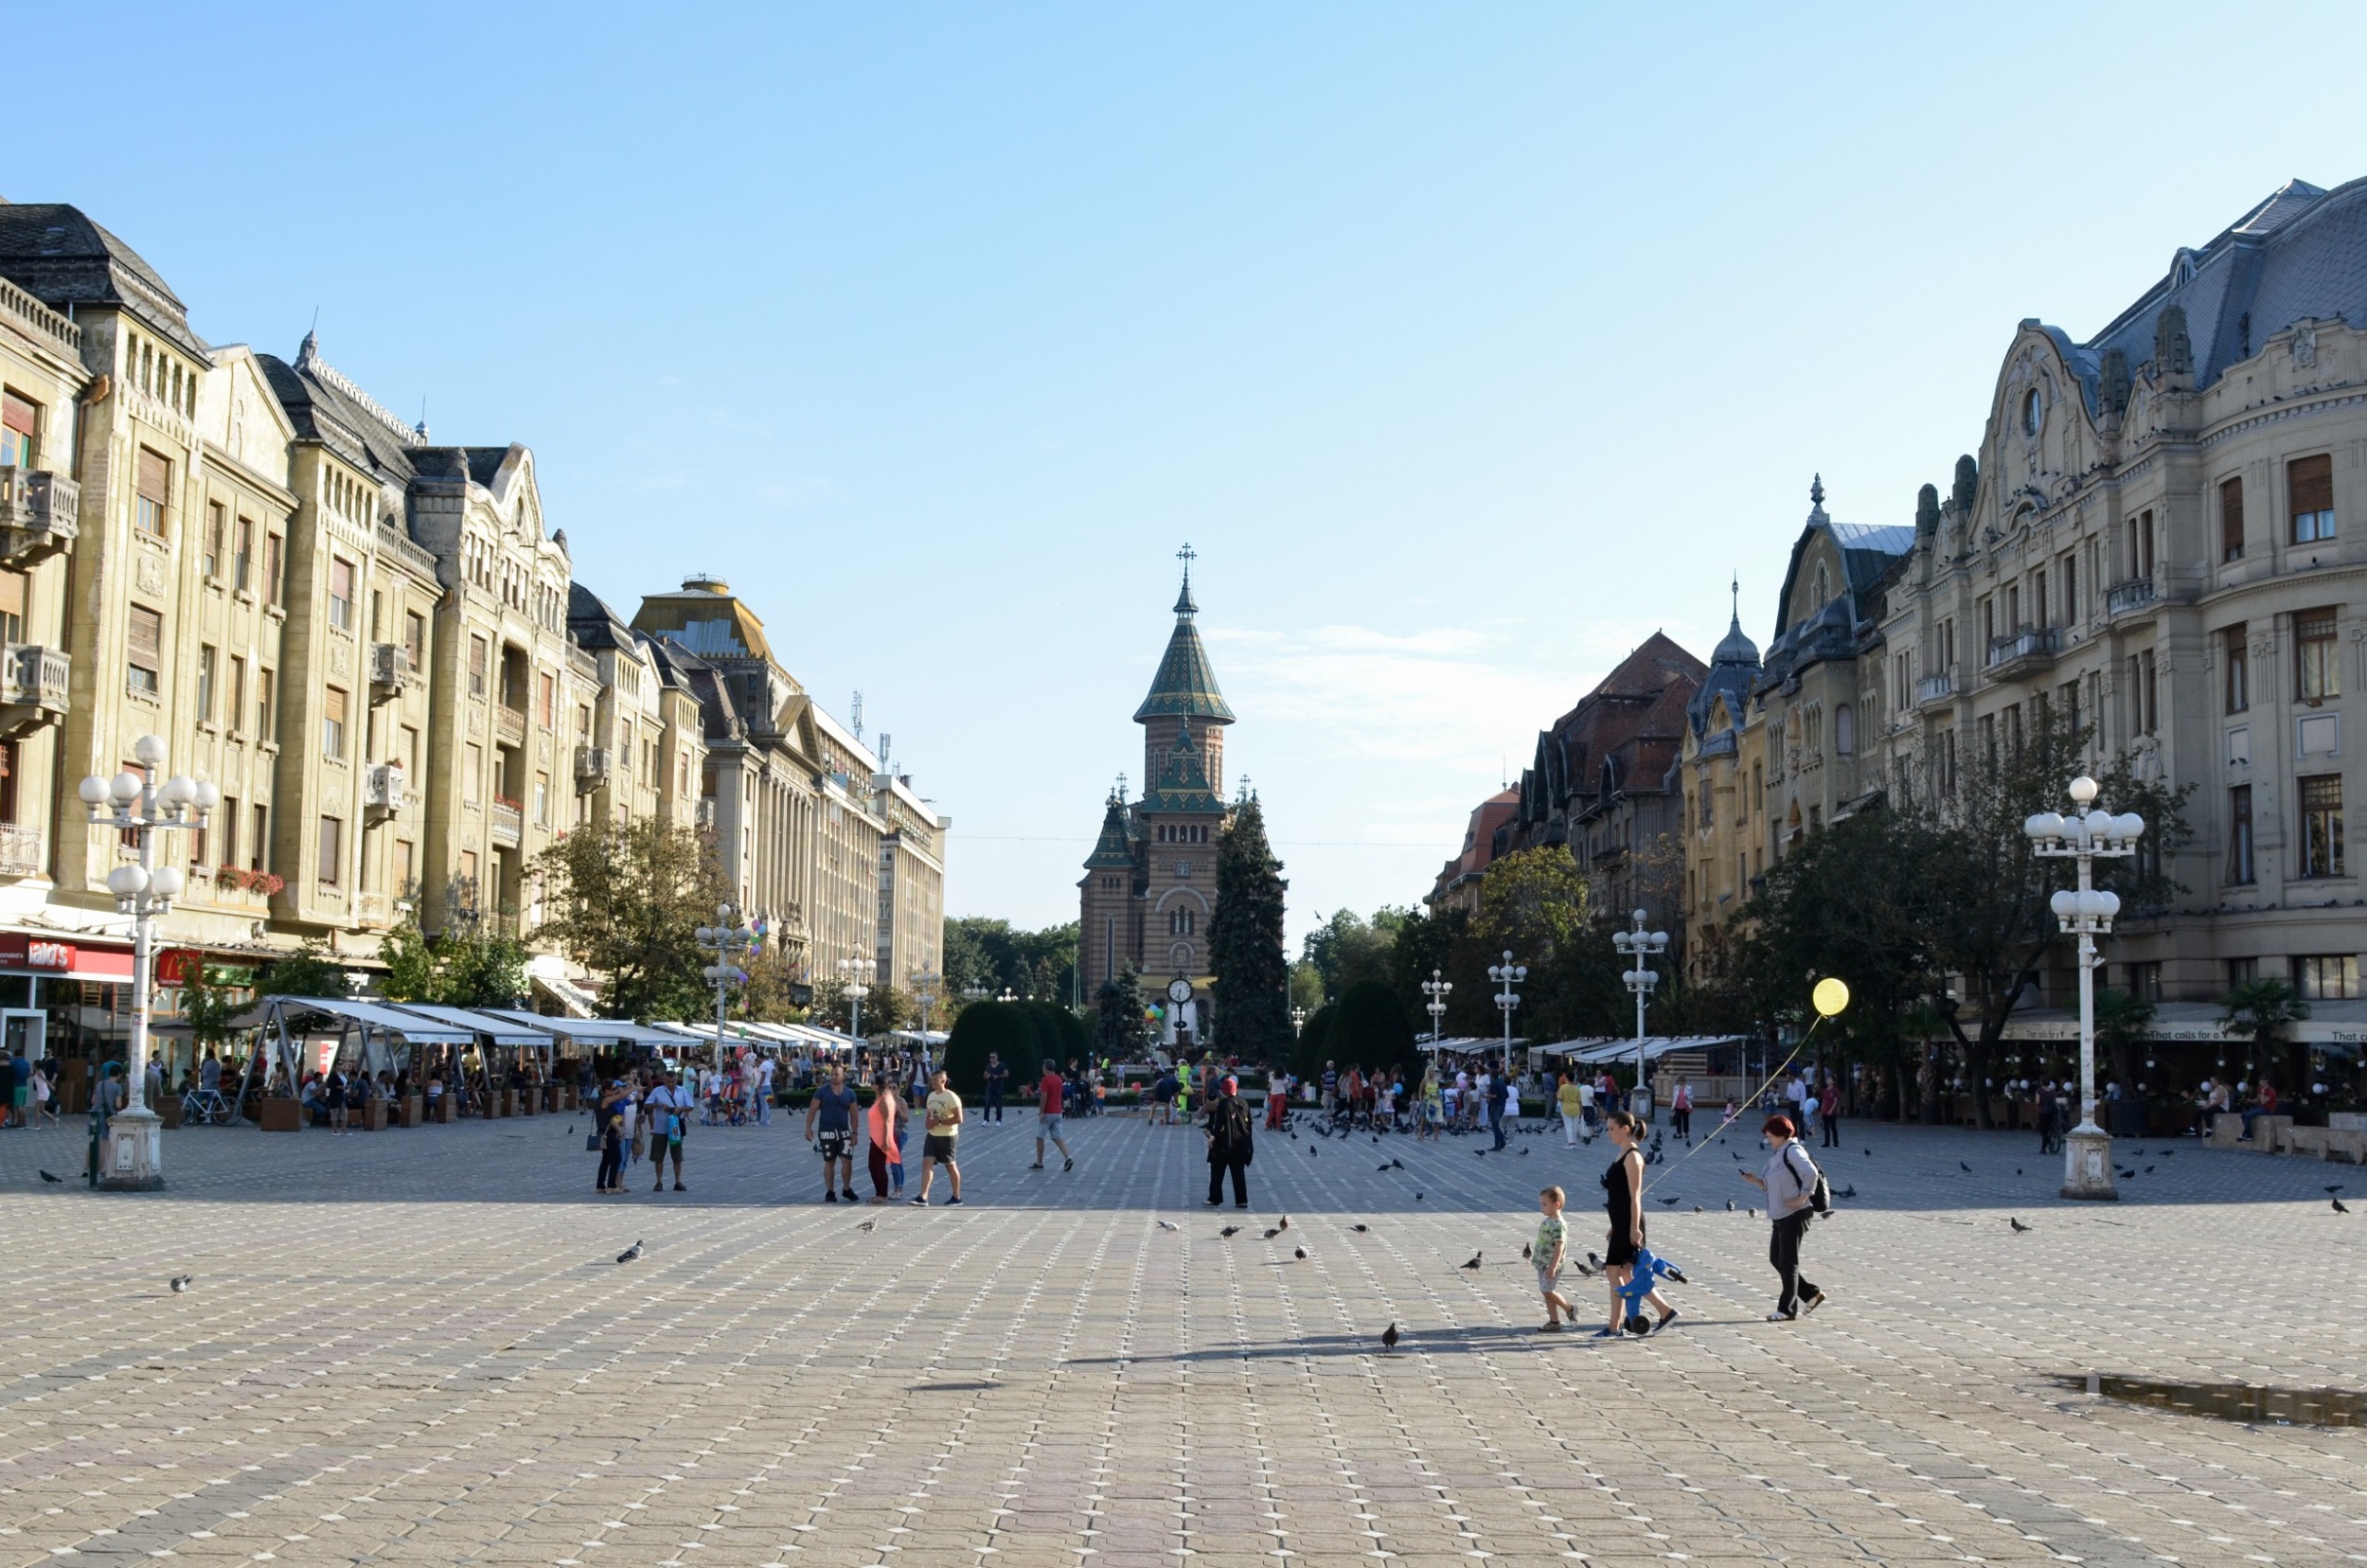 Der Piata Victorei ist das Herzstück der Stadt und eine der schönsten Sehenswürdigkeiten in Timișoara